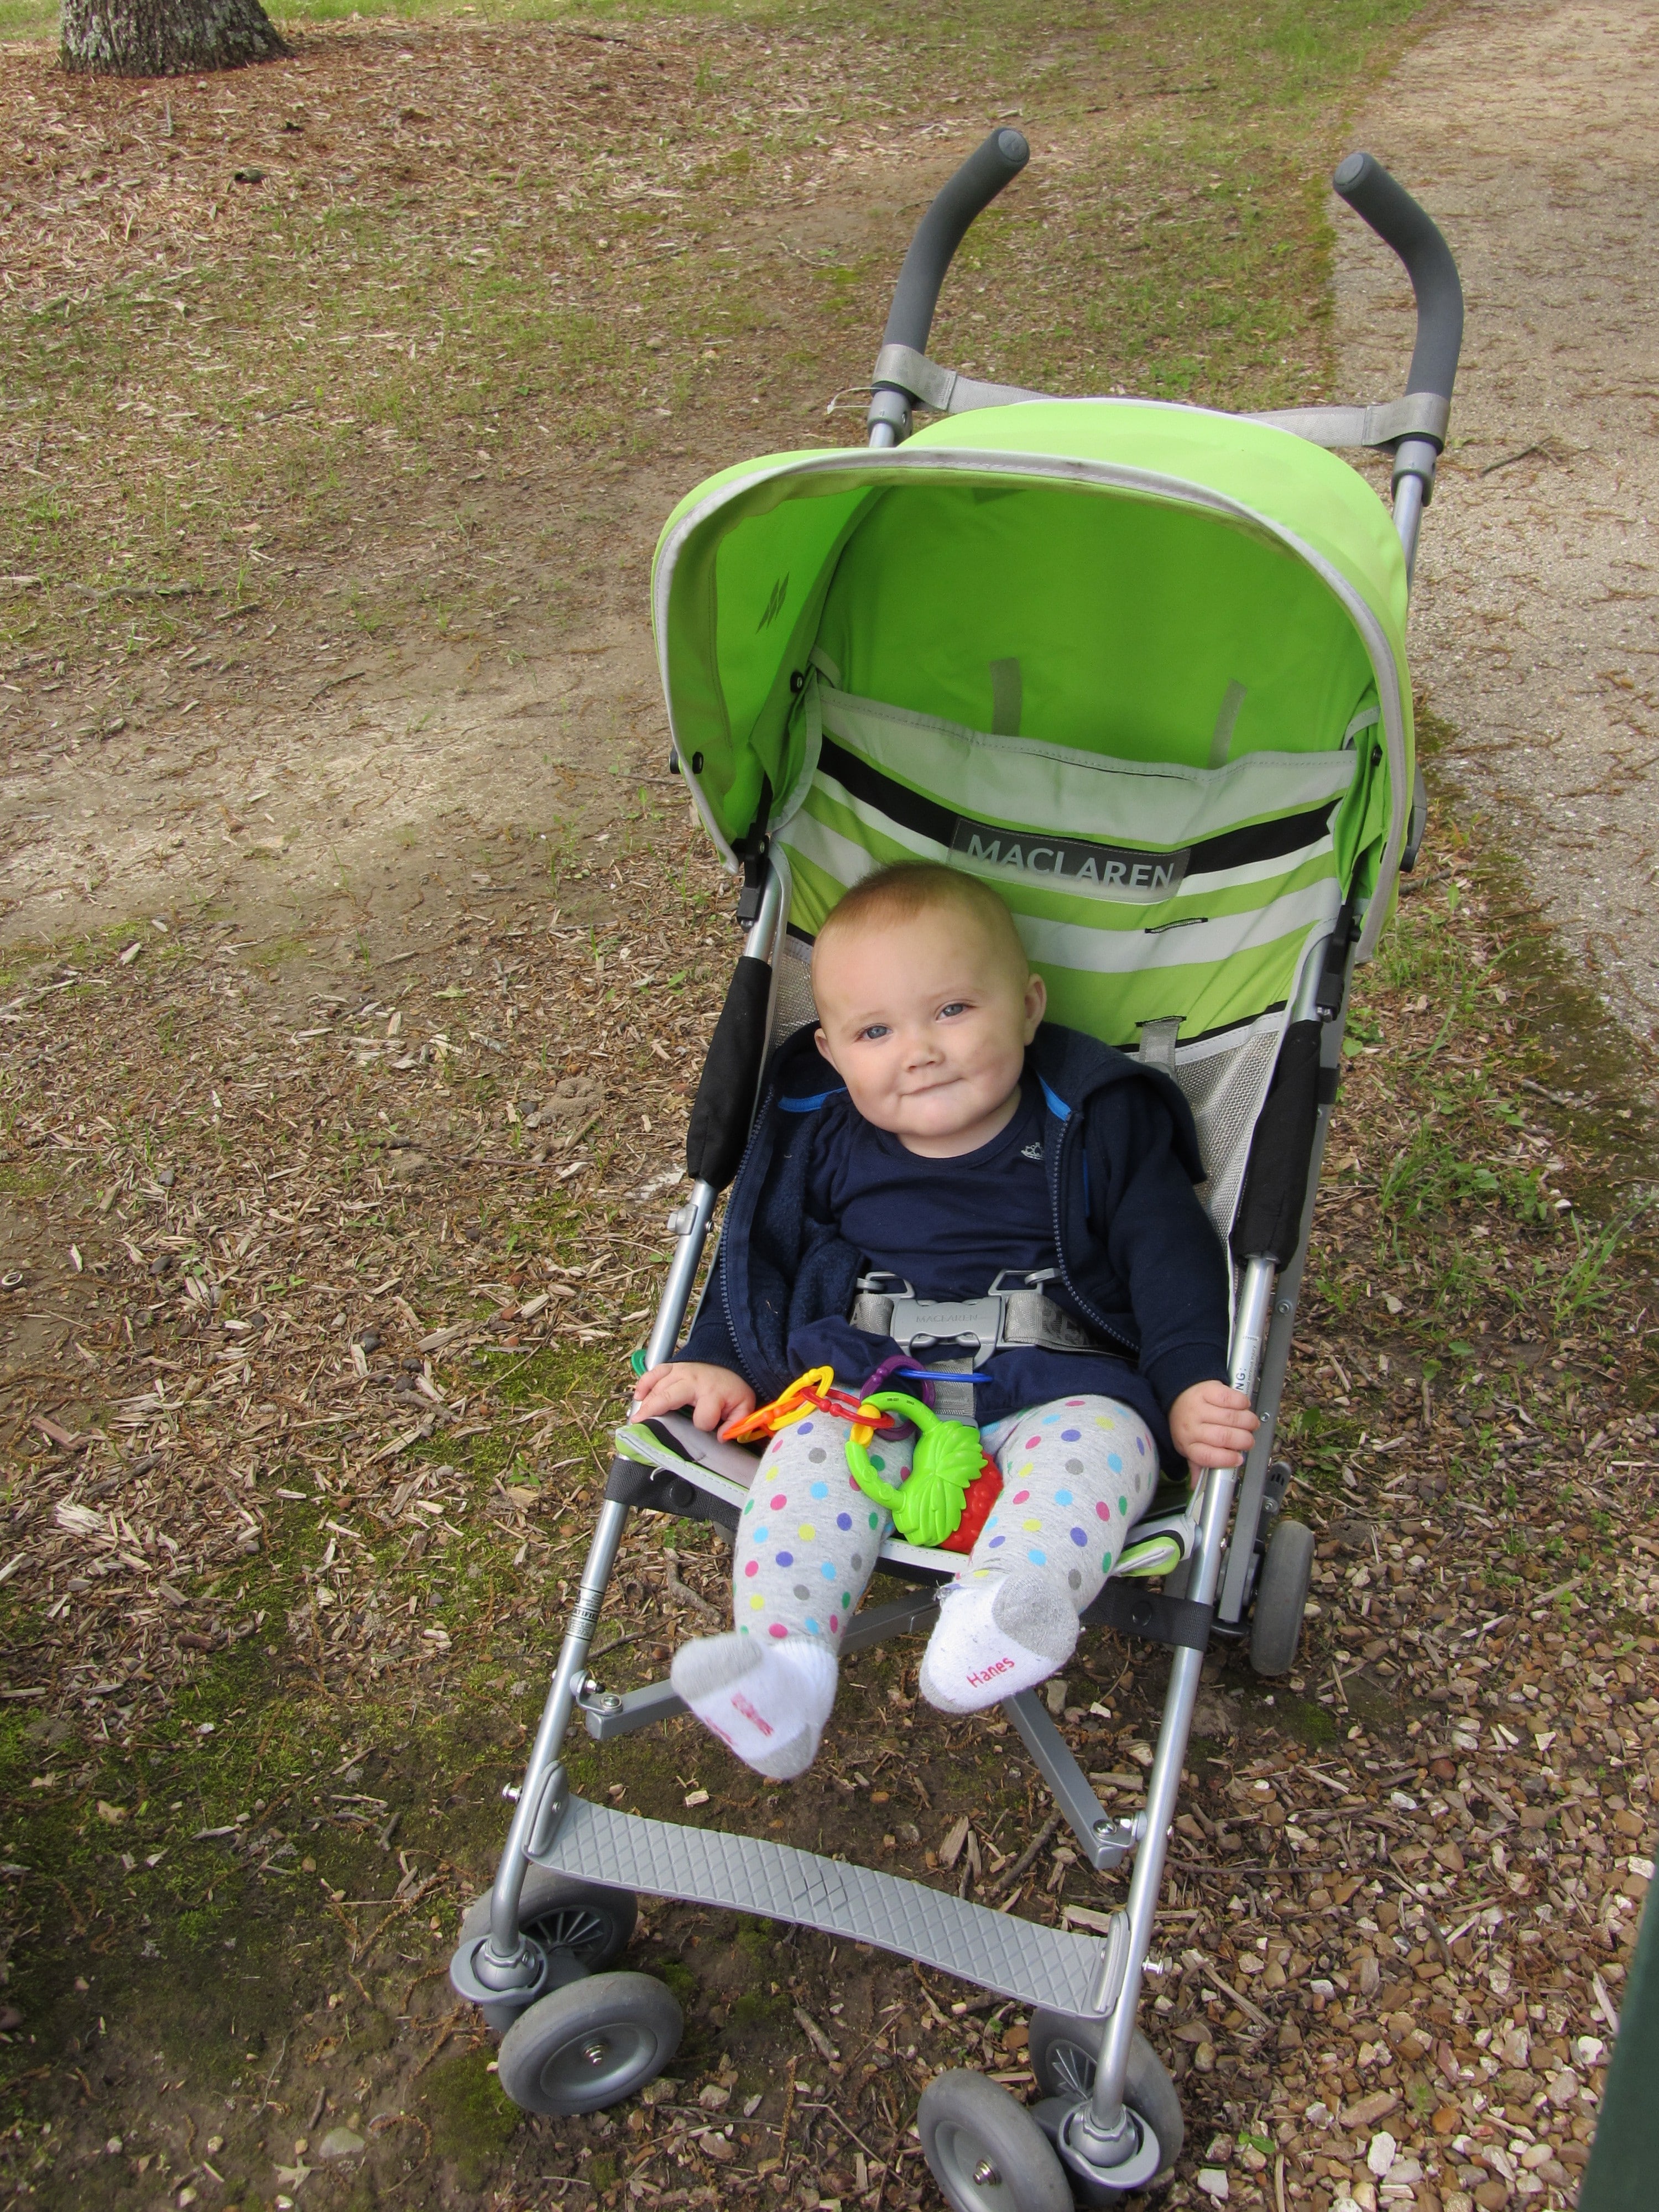 Hazel in her stroller at the park